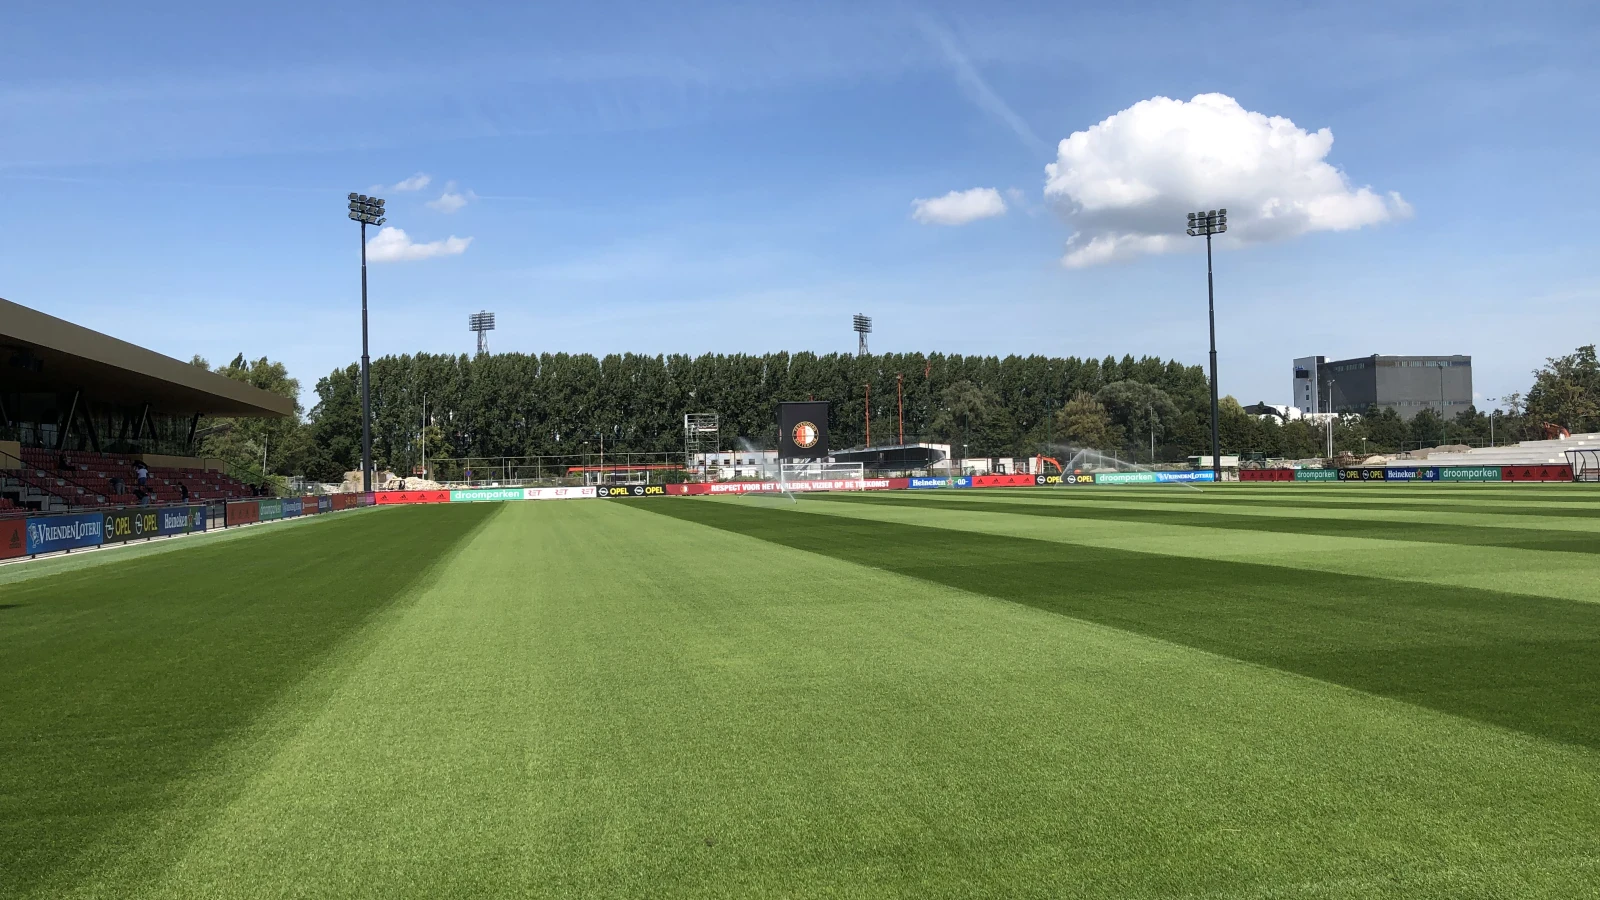 Feyenoord lanceert speciale trainingslijn voor Europese wedstrijden